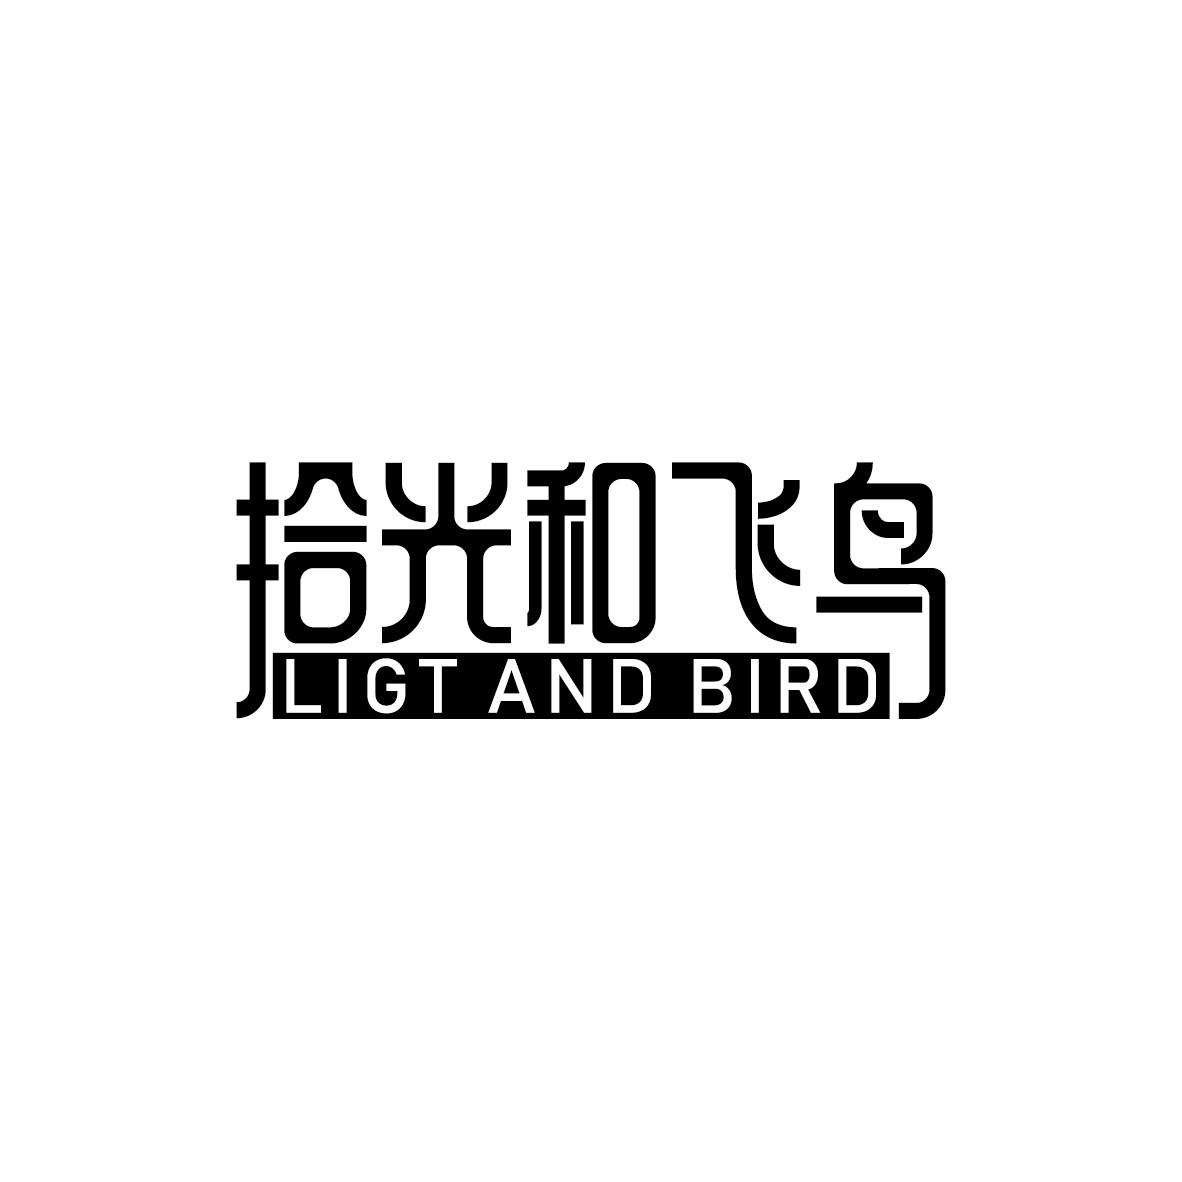 43类-餐饮住宿拾光和飞鸟 LIGT AND BIRD商标转让